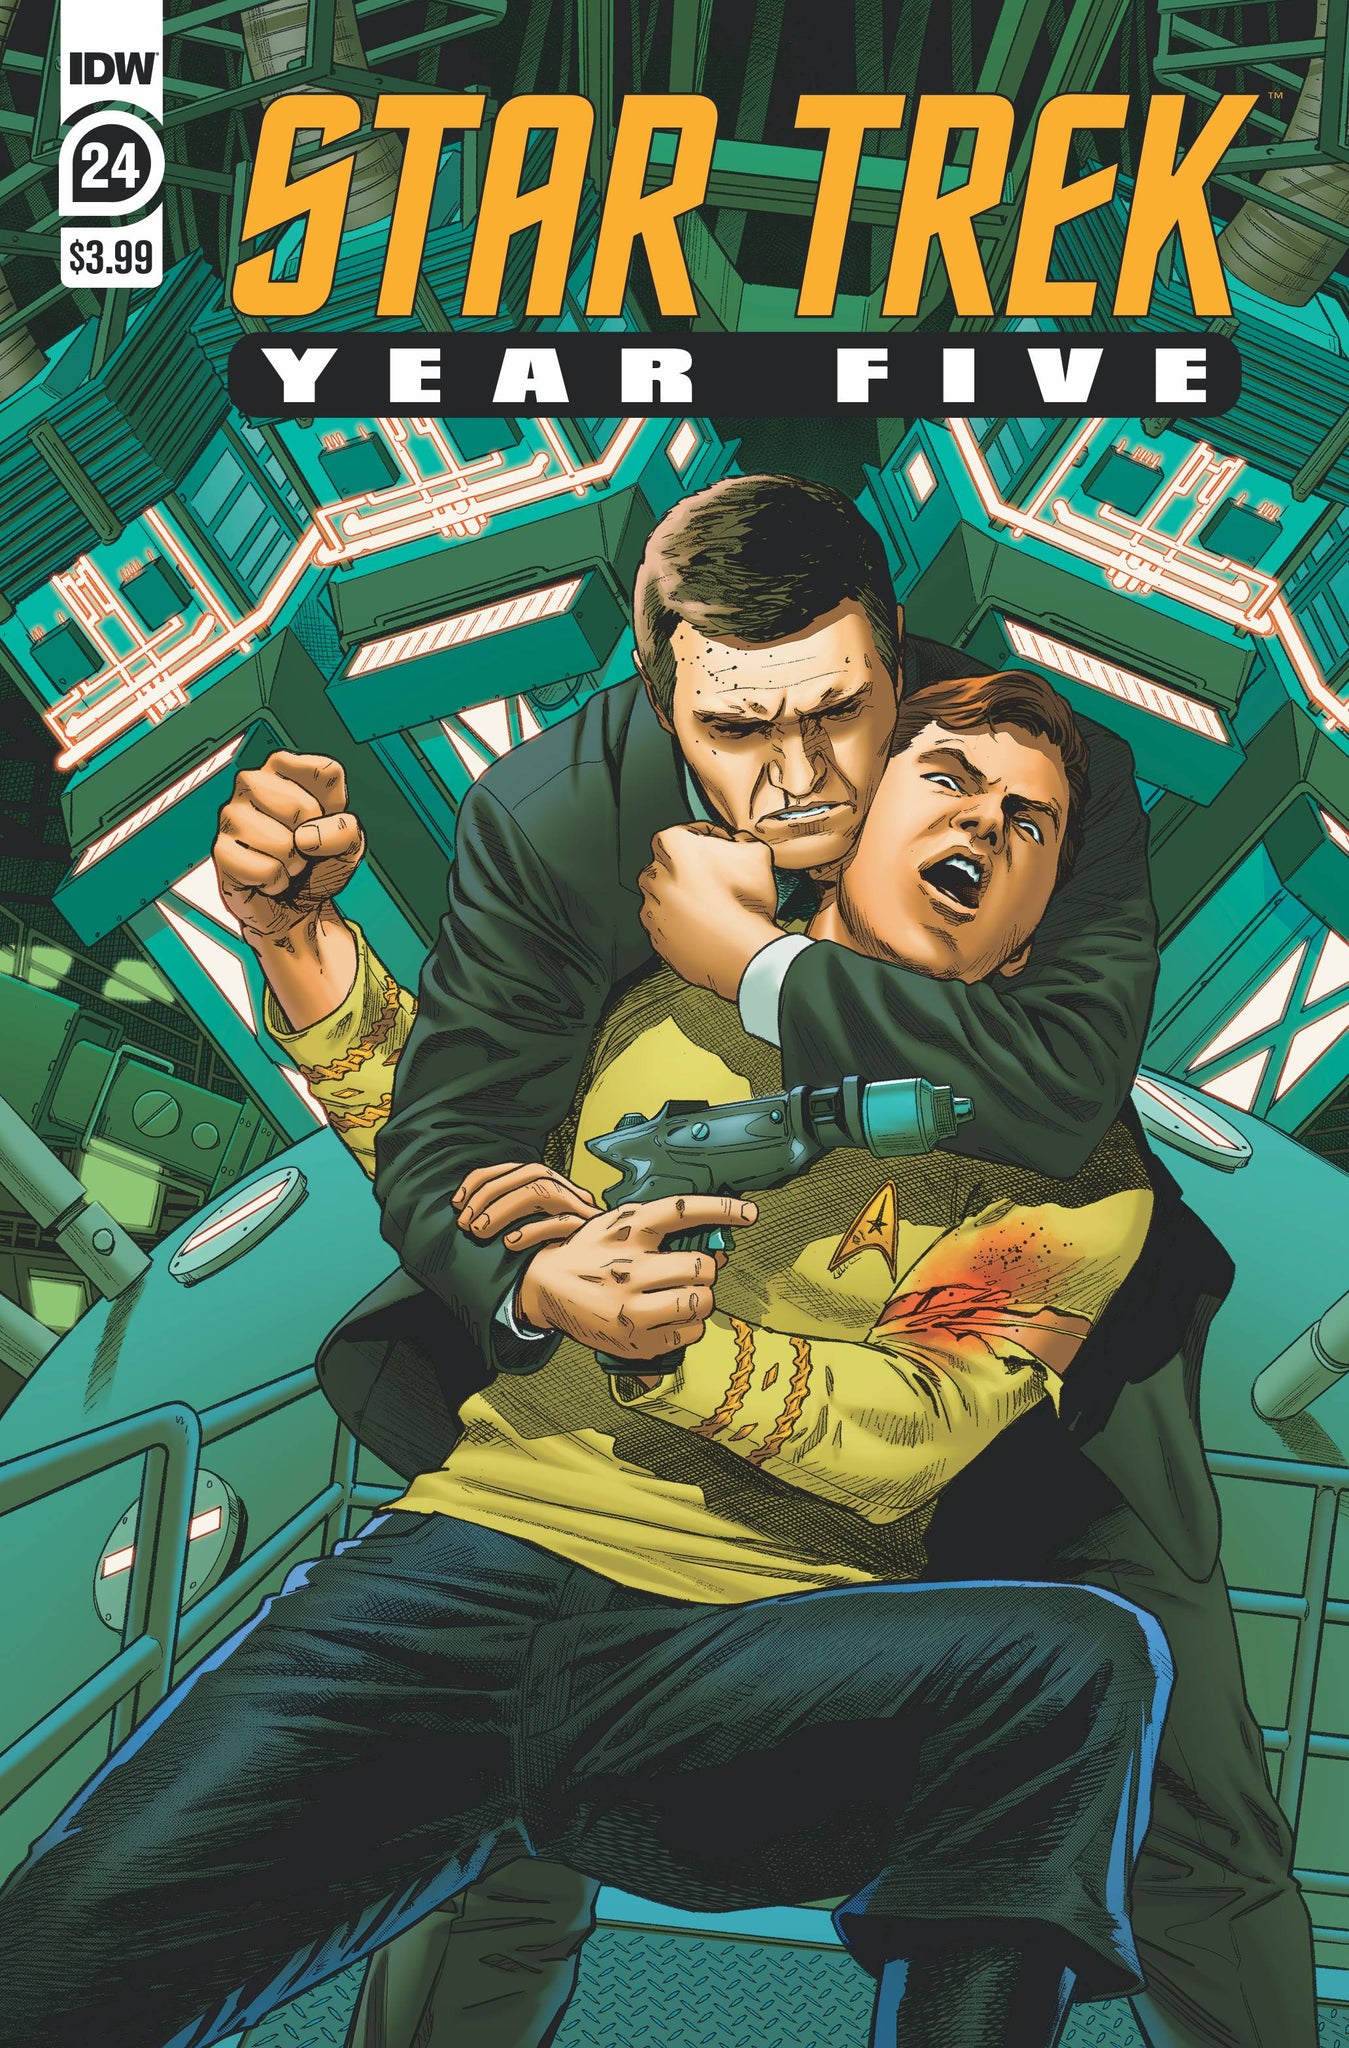 Star Trek: Year Five (2019) #24